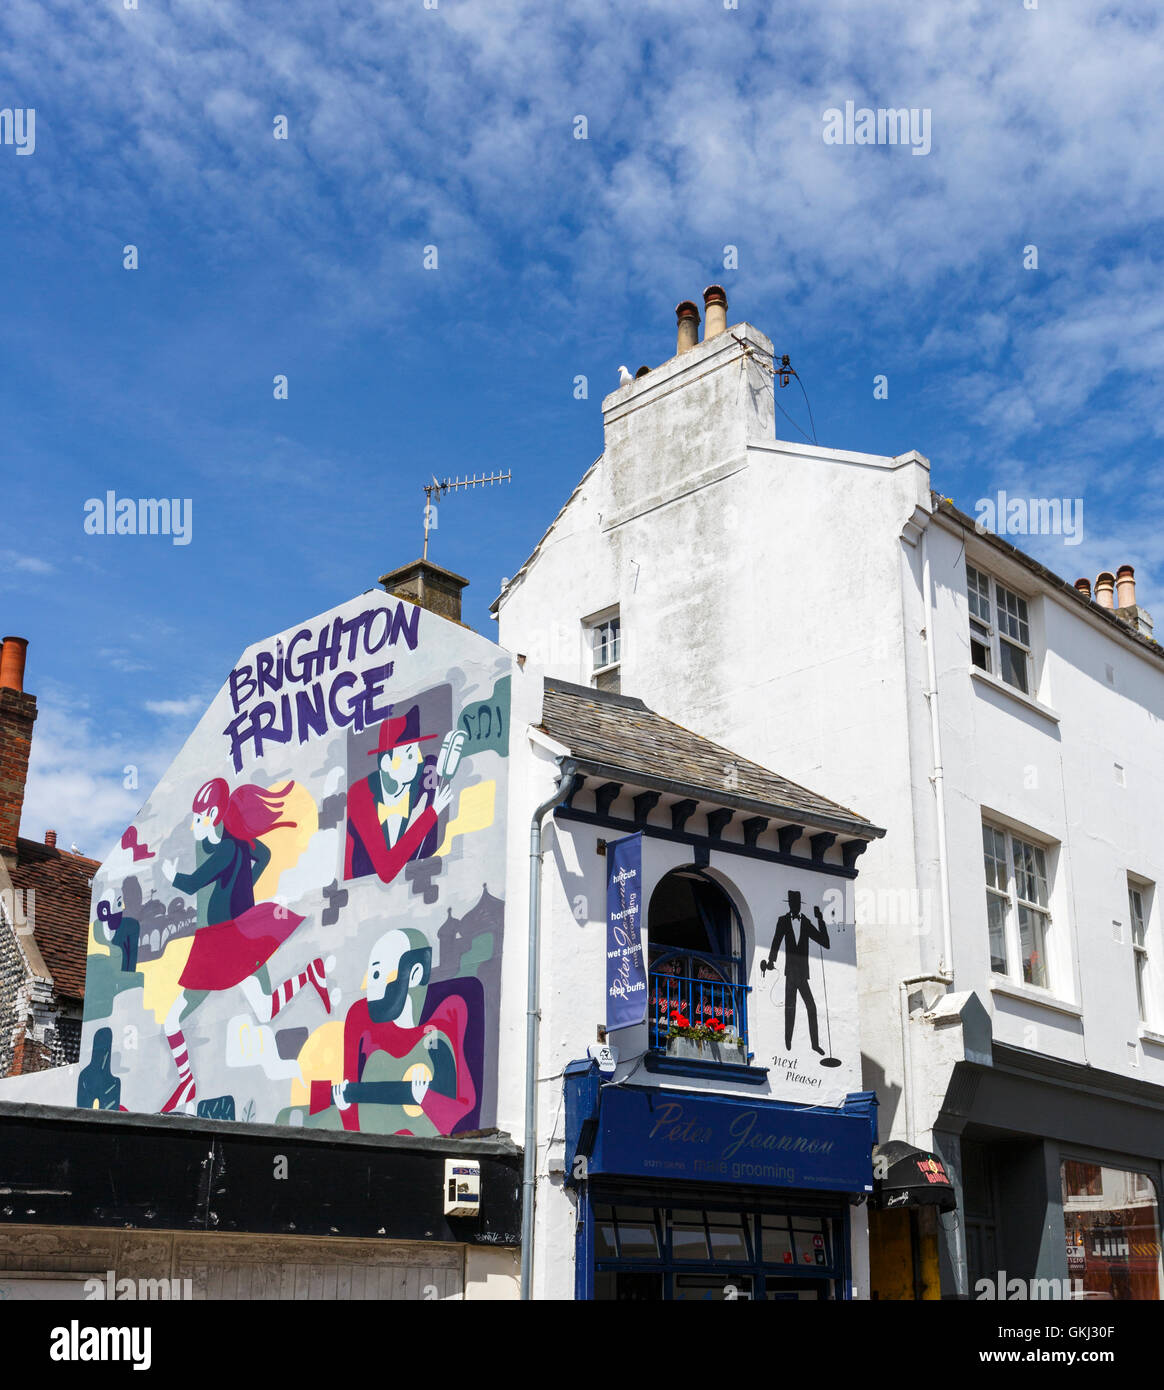 Wandbild Werbung die Brighton Fringe Festival in den Gassen, Brighton, East Sussex, UK an einem sonnigen Sommertag mit blauem Himmel Stockfoto